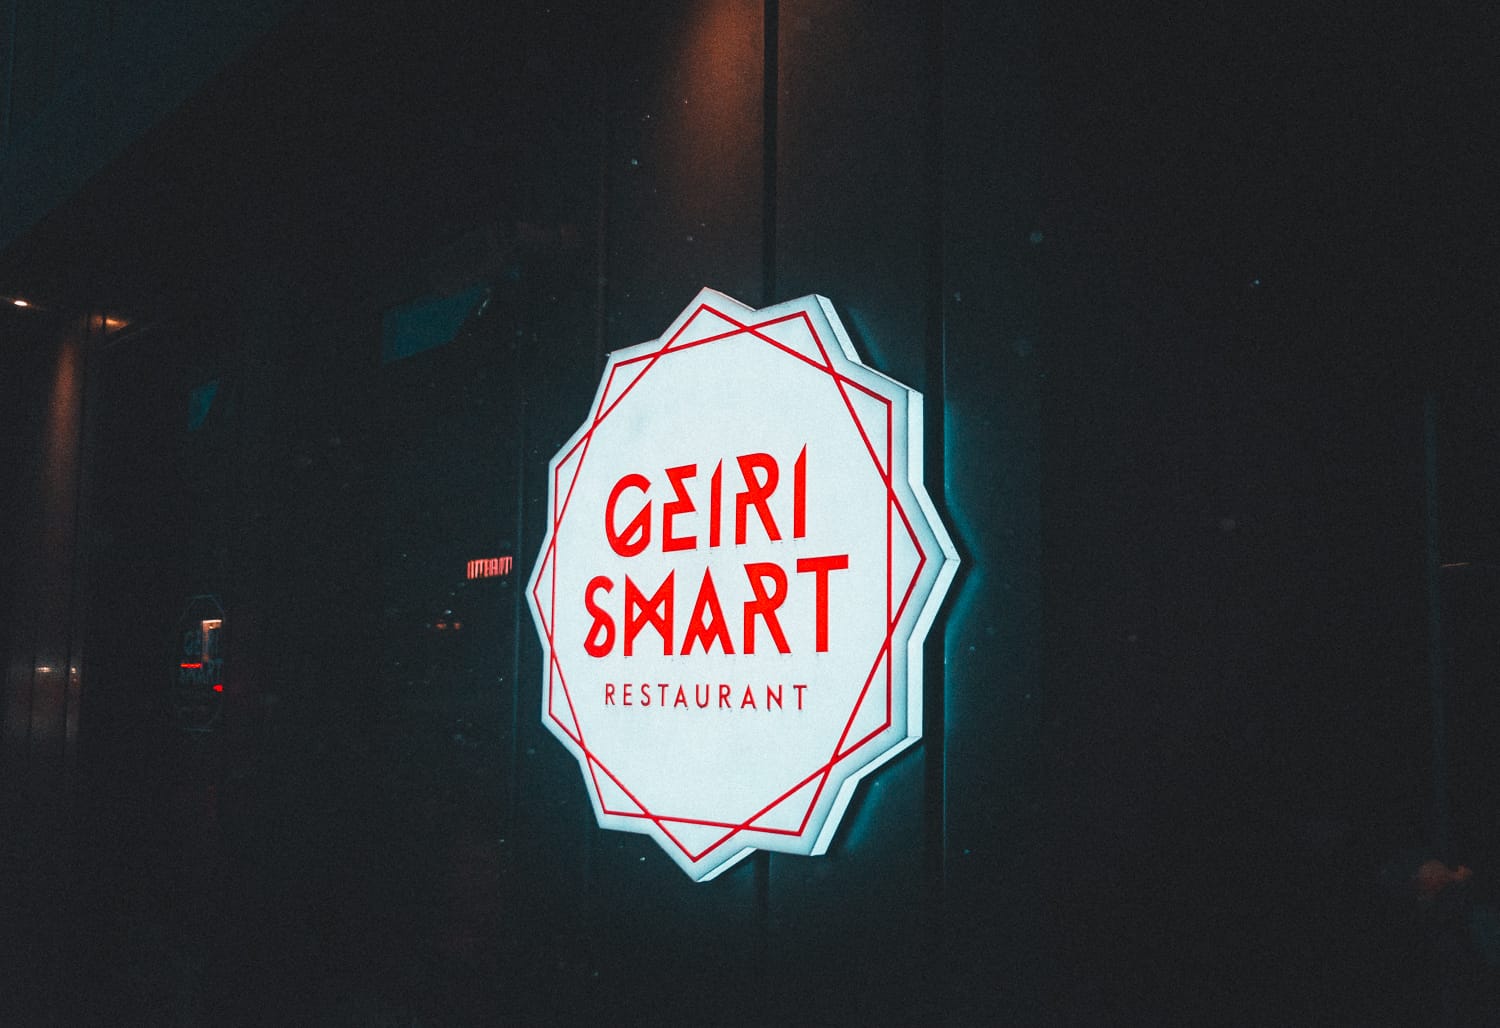 Geiri Smart restaurant Reykjavik